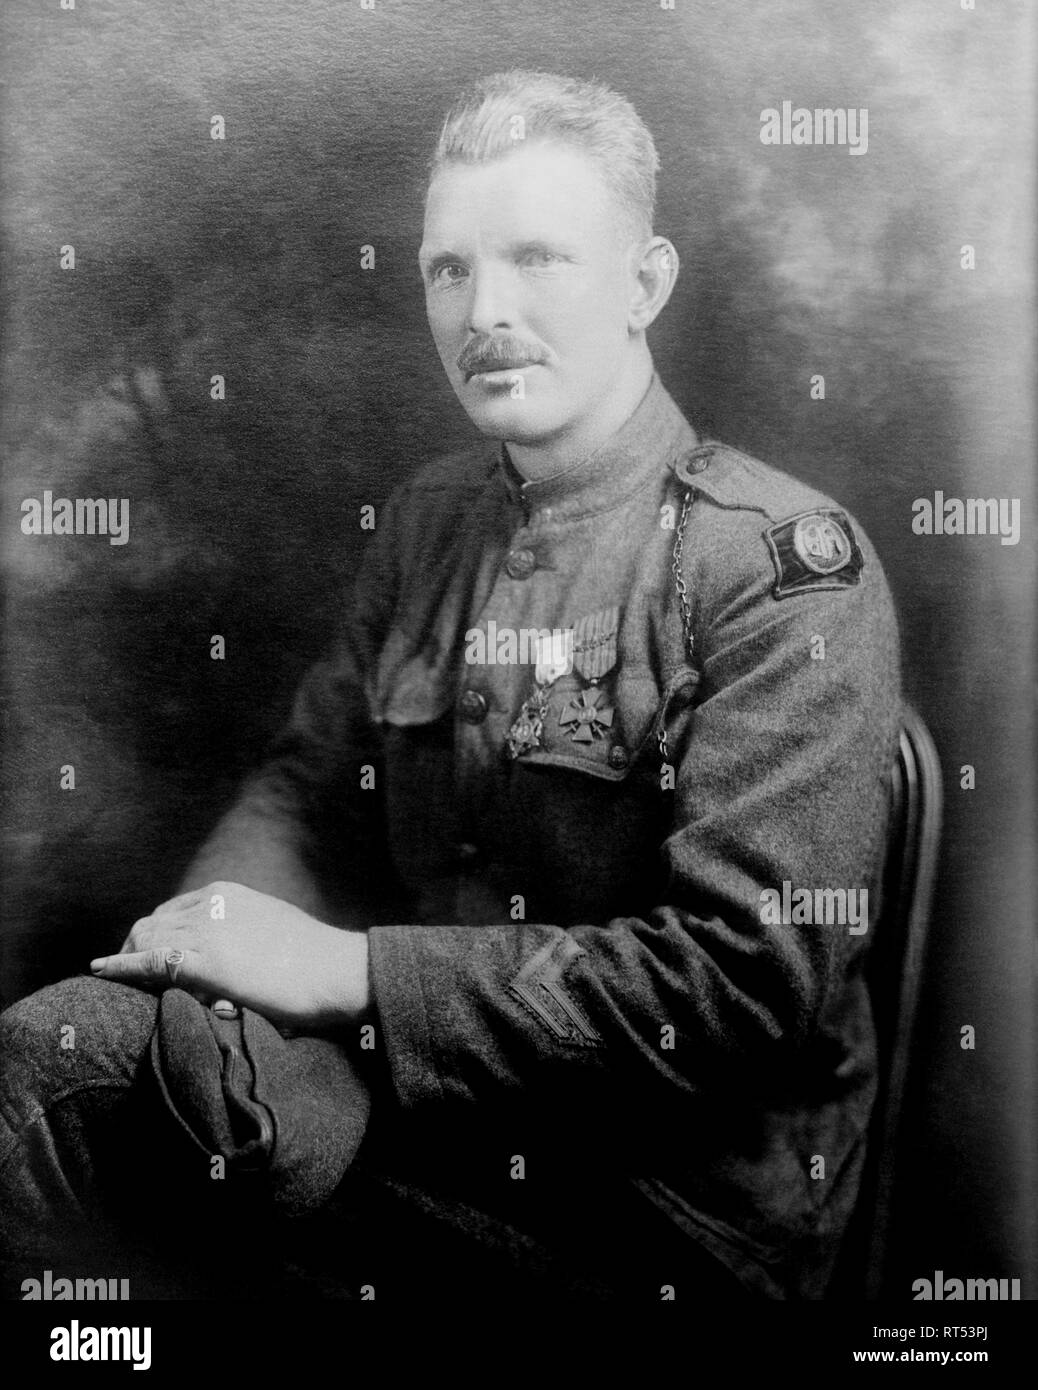 Portrait de la Première Guerre mondiale, le sergent Alvin York. Banque D'Images